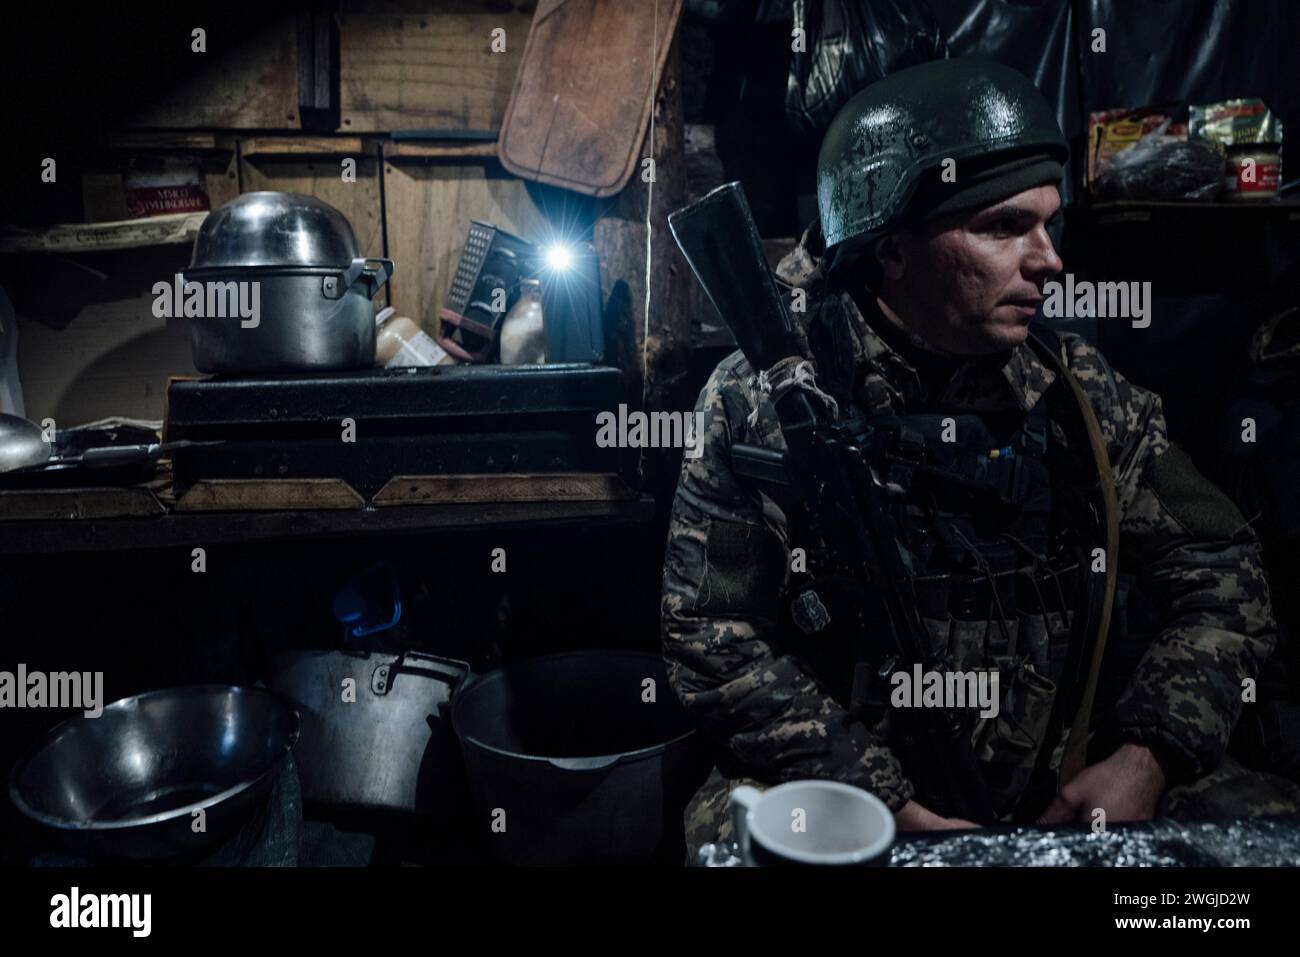 Ukraine. 29th Nov, 2023. © Adrien Vautier/Le Pictorium/MAXPPP - 29/11/2023 Adrien Vautier/Le Pictorium - 29/11/2023 - Ukraine - Un soldat de la 24eme brigade se rechauffe dans l'abri qui sert de cuisine a l'unite. Le 29 novembre 2023. - Valeurs ACtuelles out, no jdd, jdd out, RUSSIA OUT, NO RUSSIA #norussia/29/11/2023 - Ukraine - A soldier from the 24th Brigade warms up in the shelter that serves as the unit's kitchen. November 29, 2023. Credit: MAXPPP/Alamy Live News Stock Photo